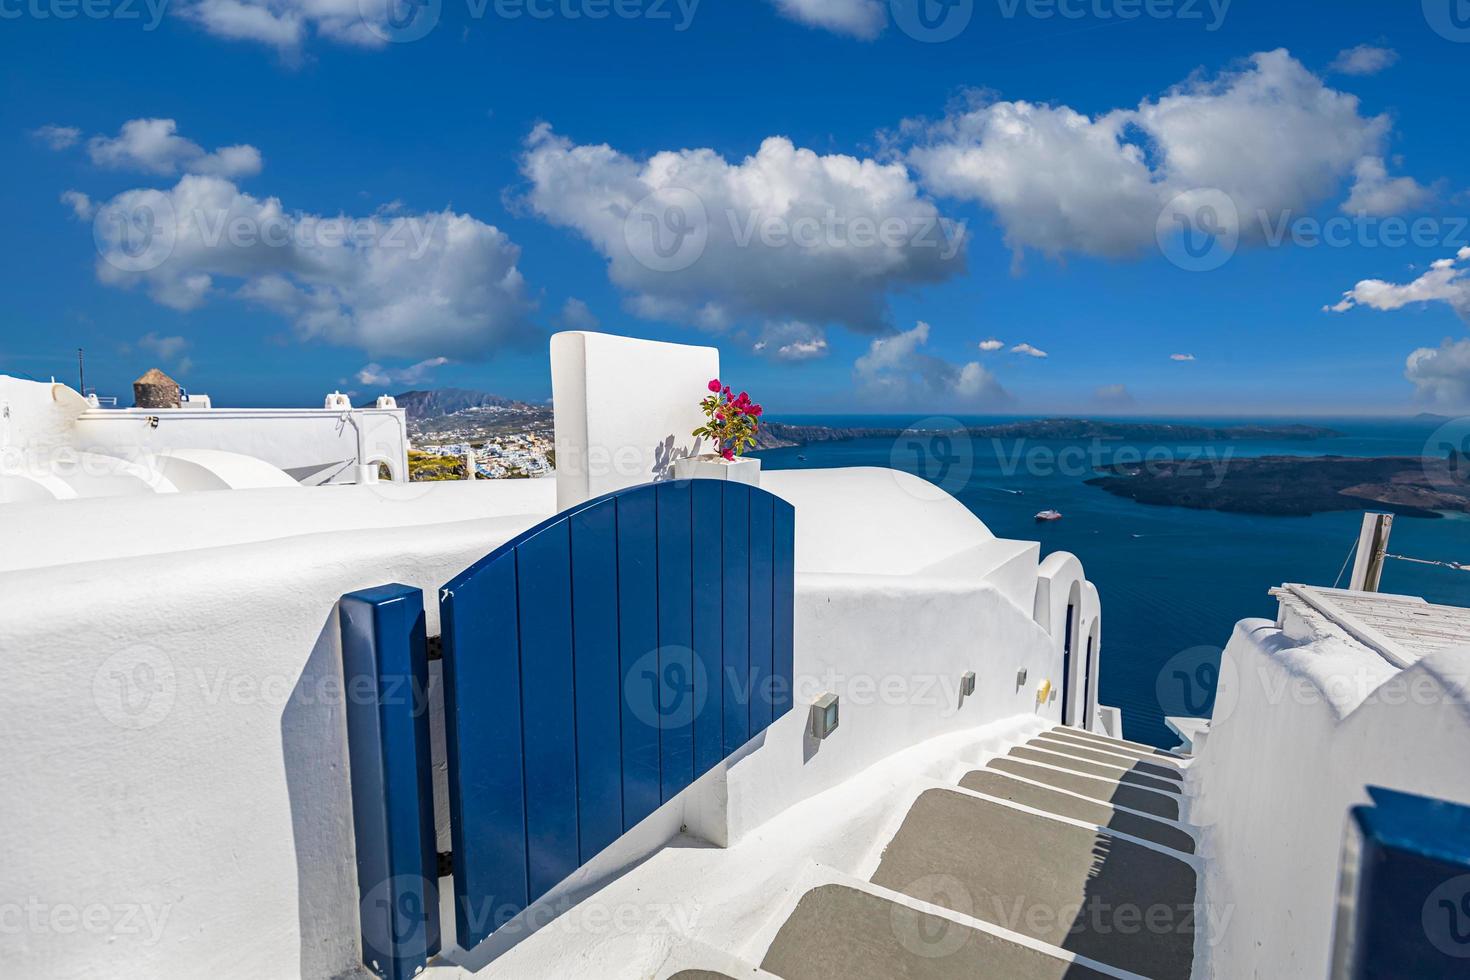 relaxante romântico vista branco arquitetura santorini grécia, caldera vista sobre o mar azul vulcão ilha. paisagem de verão para viajar modelo de férias. hotel resort de luxo, famoso destino de viagem foto